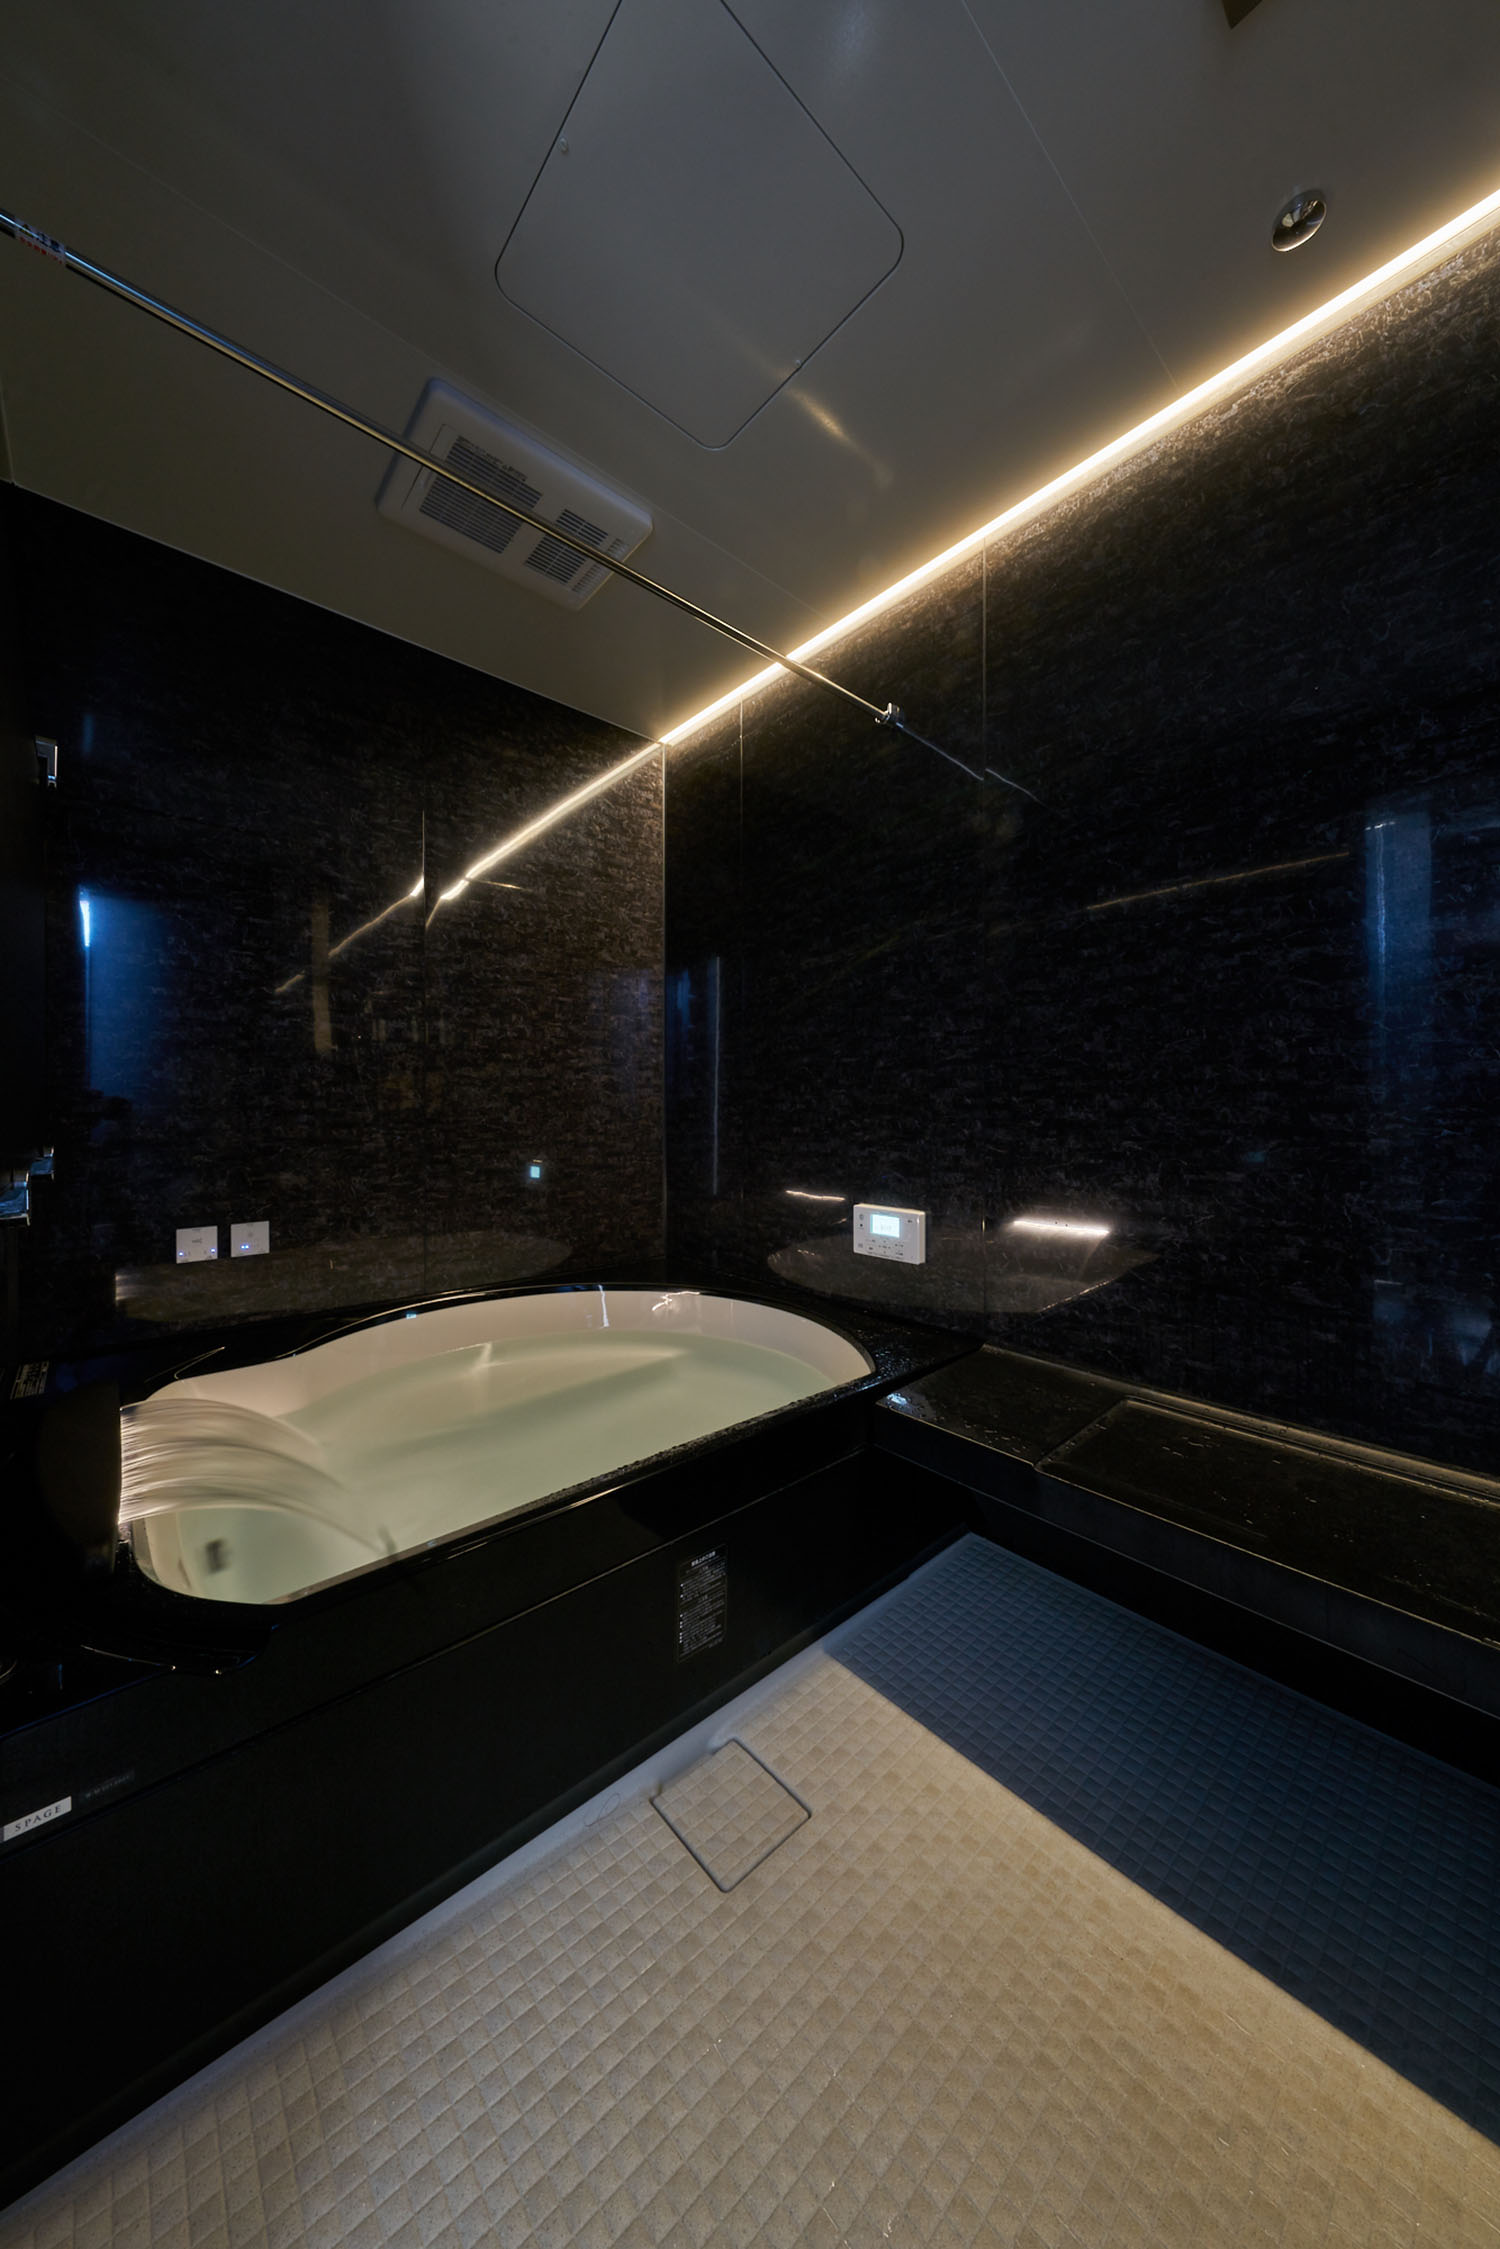 壁に間接照明が取り付けられた黒を基調とした浴室・デザイン住宅